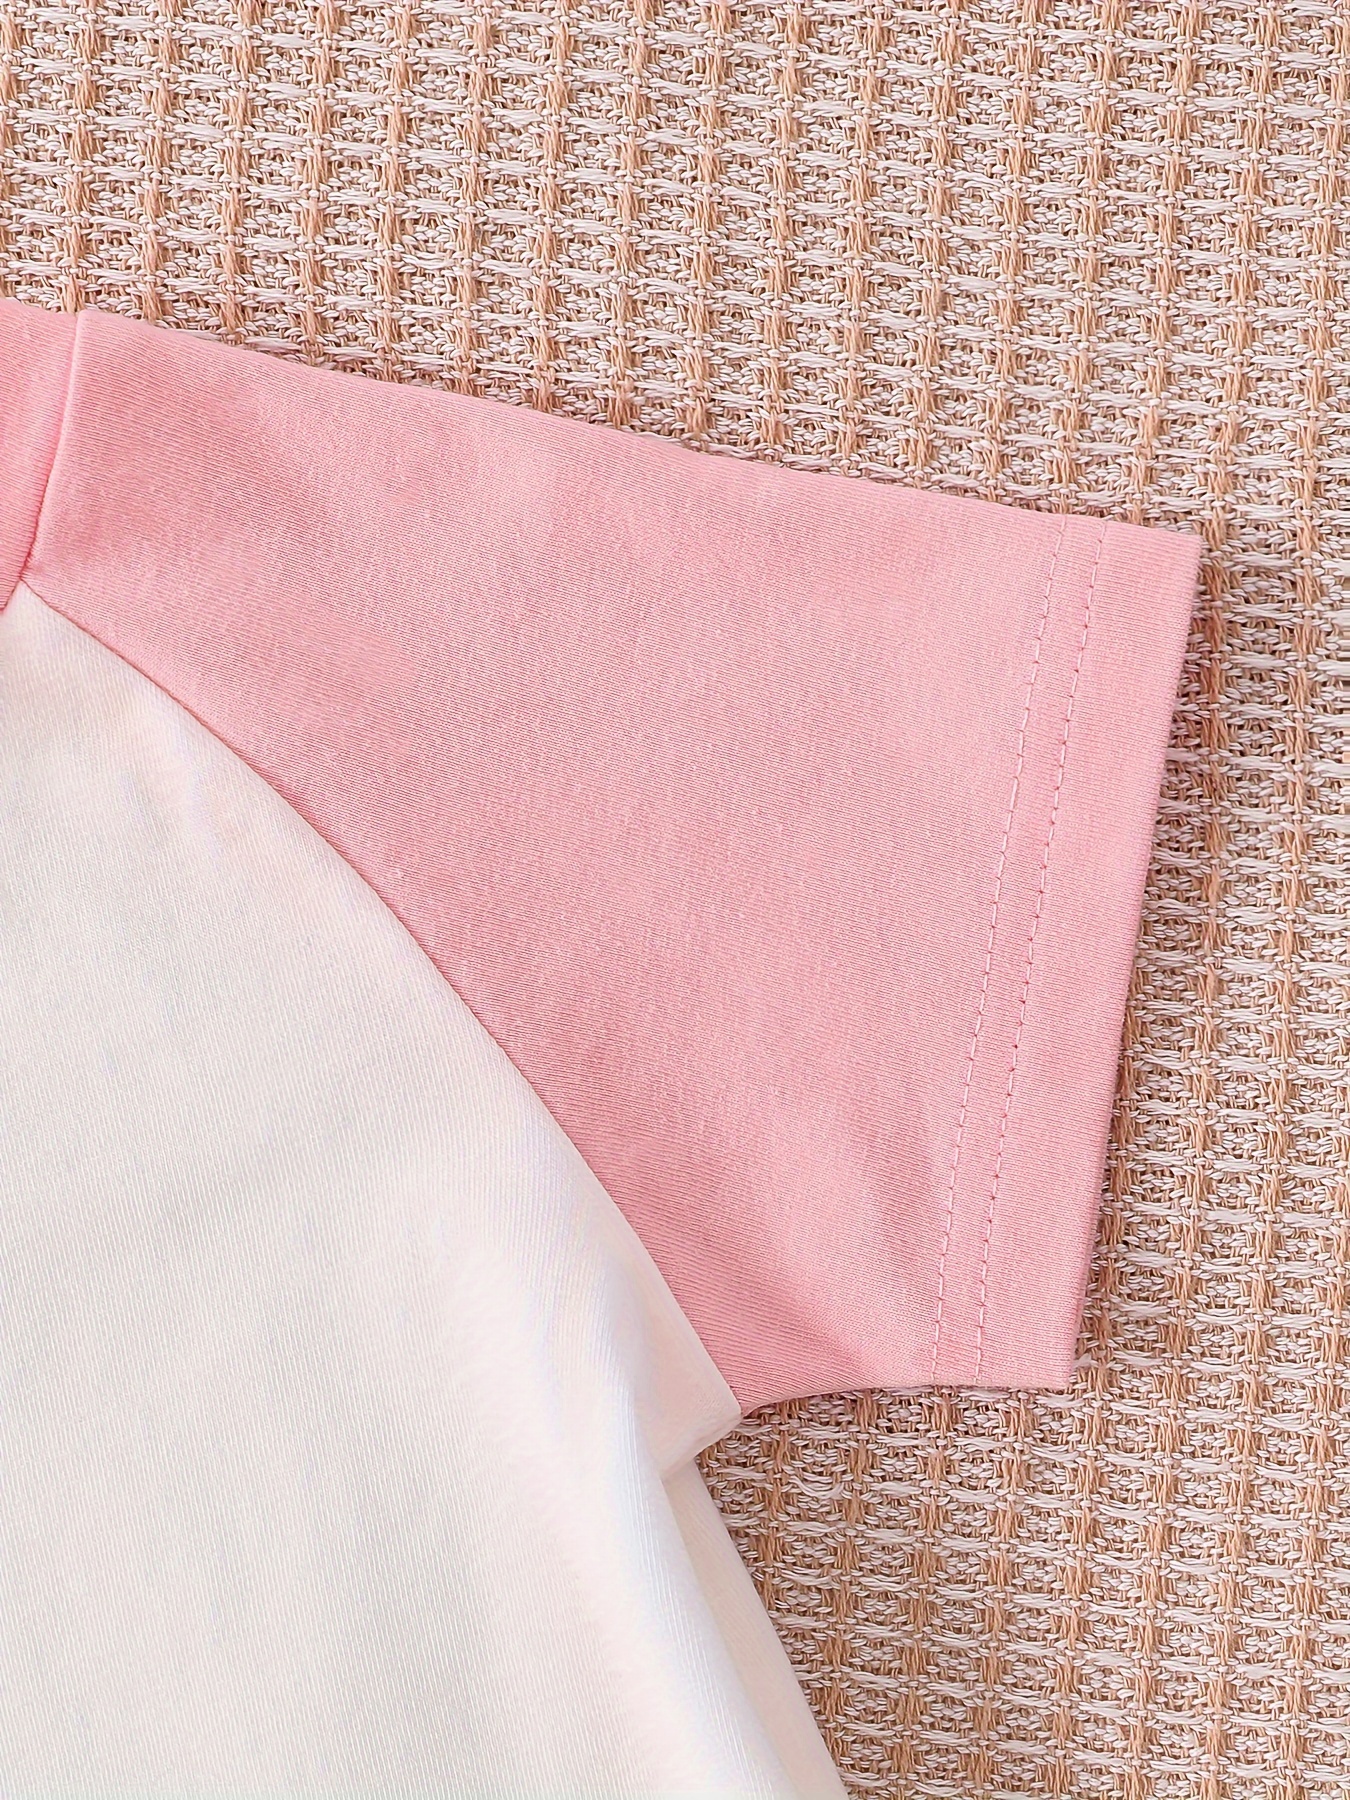 Fashion Leopard Print Briefs Pink Letter Love Solid Color Cotton